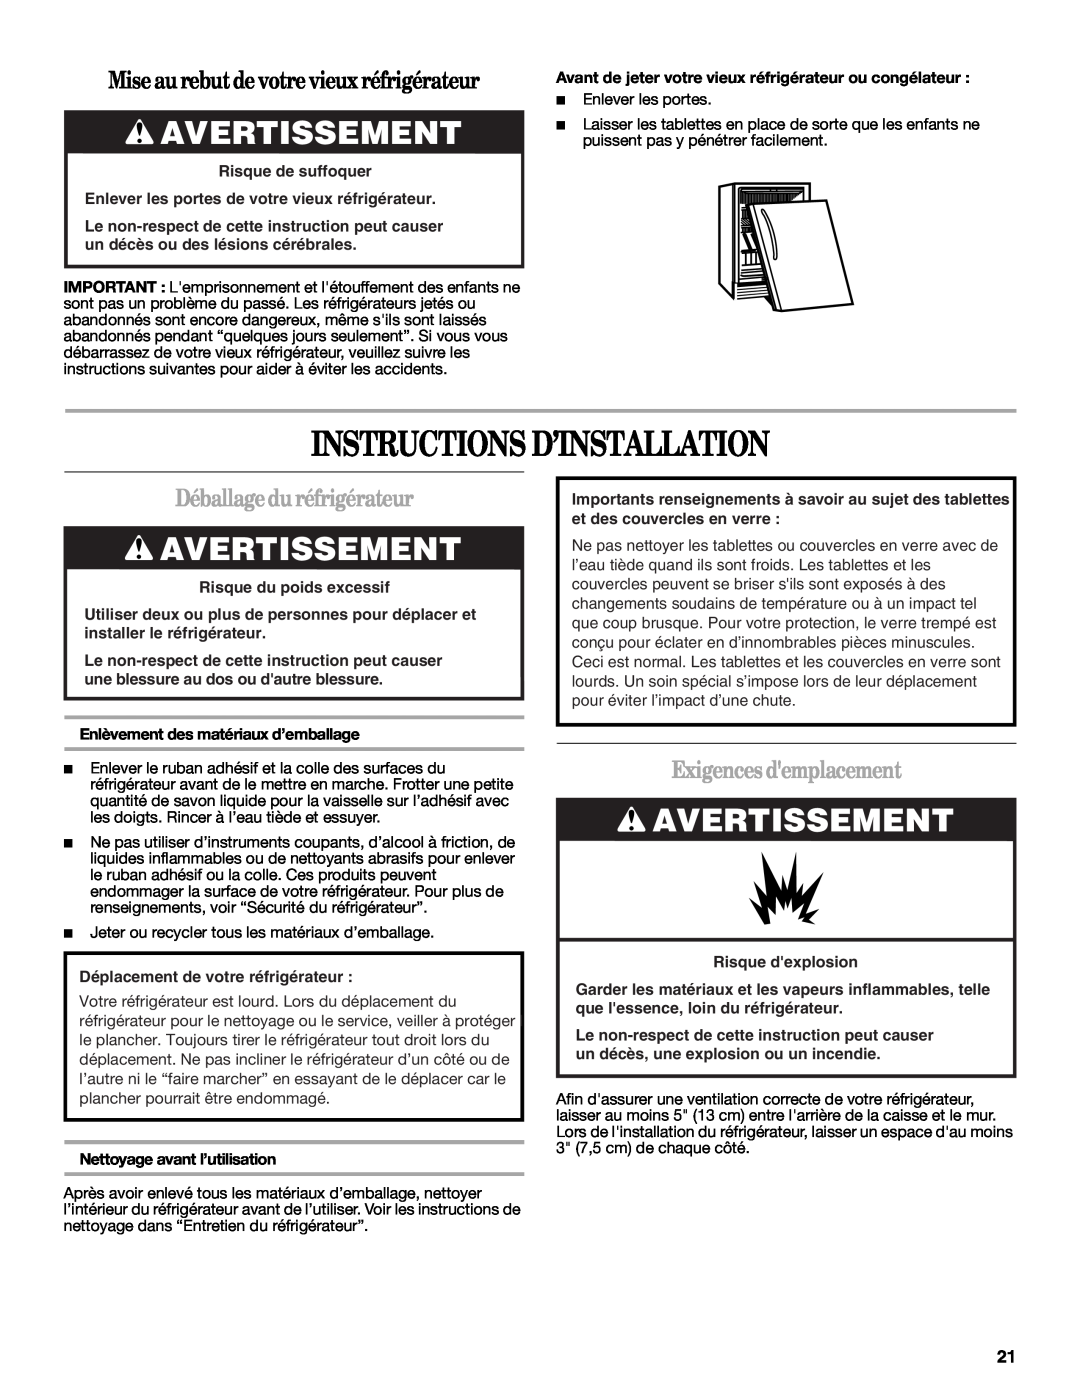 Whirlpool WAR449W manual Instructions D’Installation, Avertissement, Mise au rebutde votre vieux réfrigérateur 